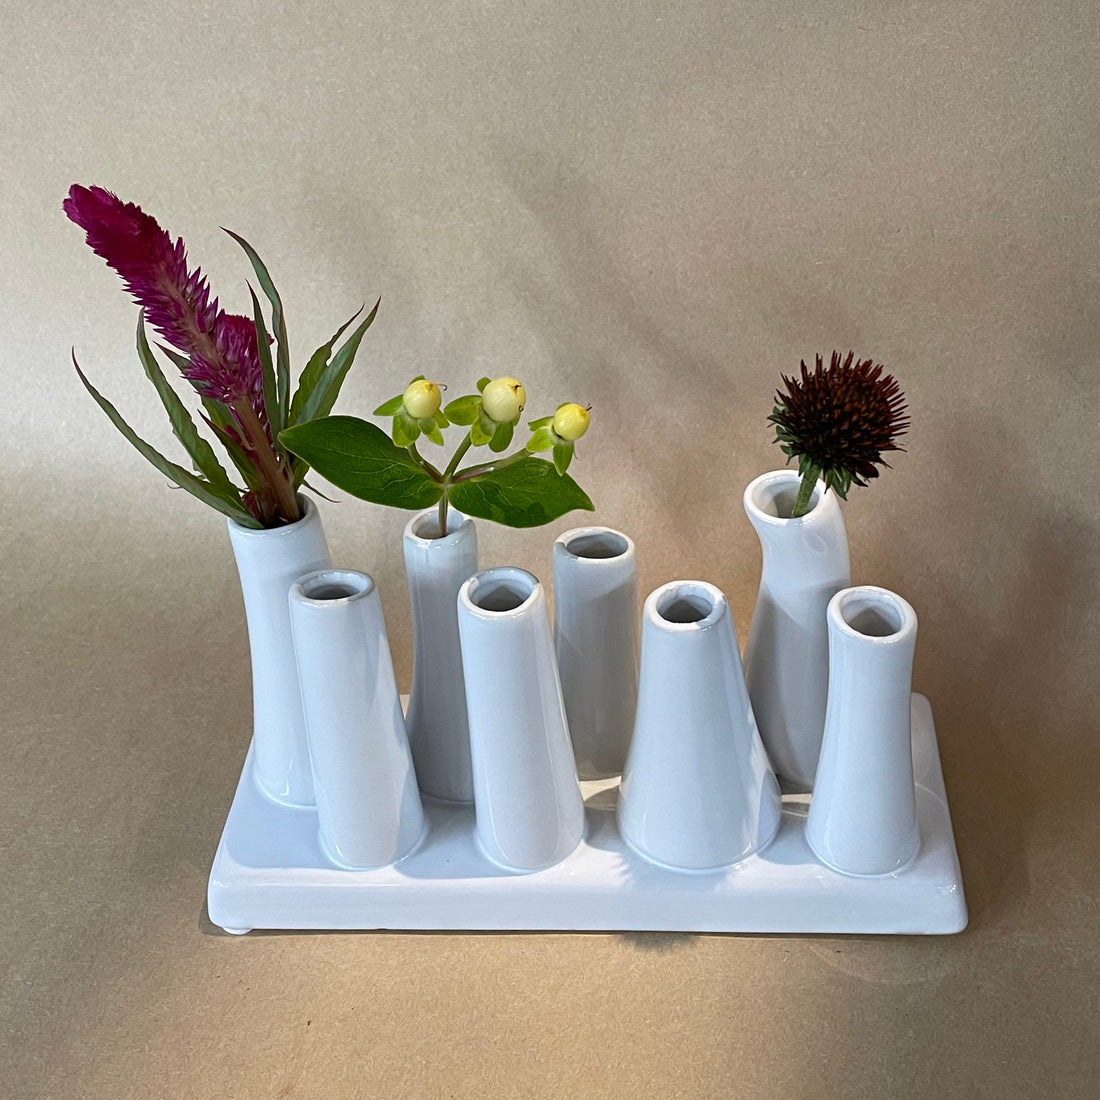 A Little Vase (7986410422558)